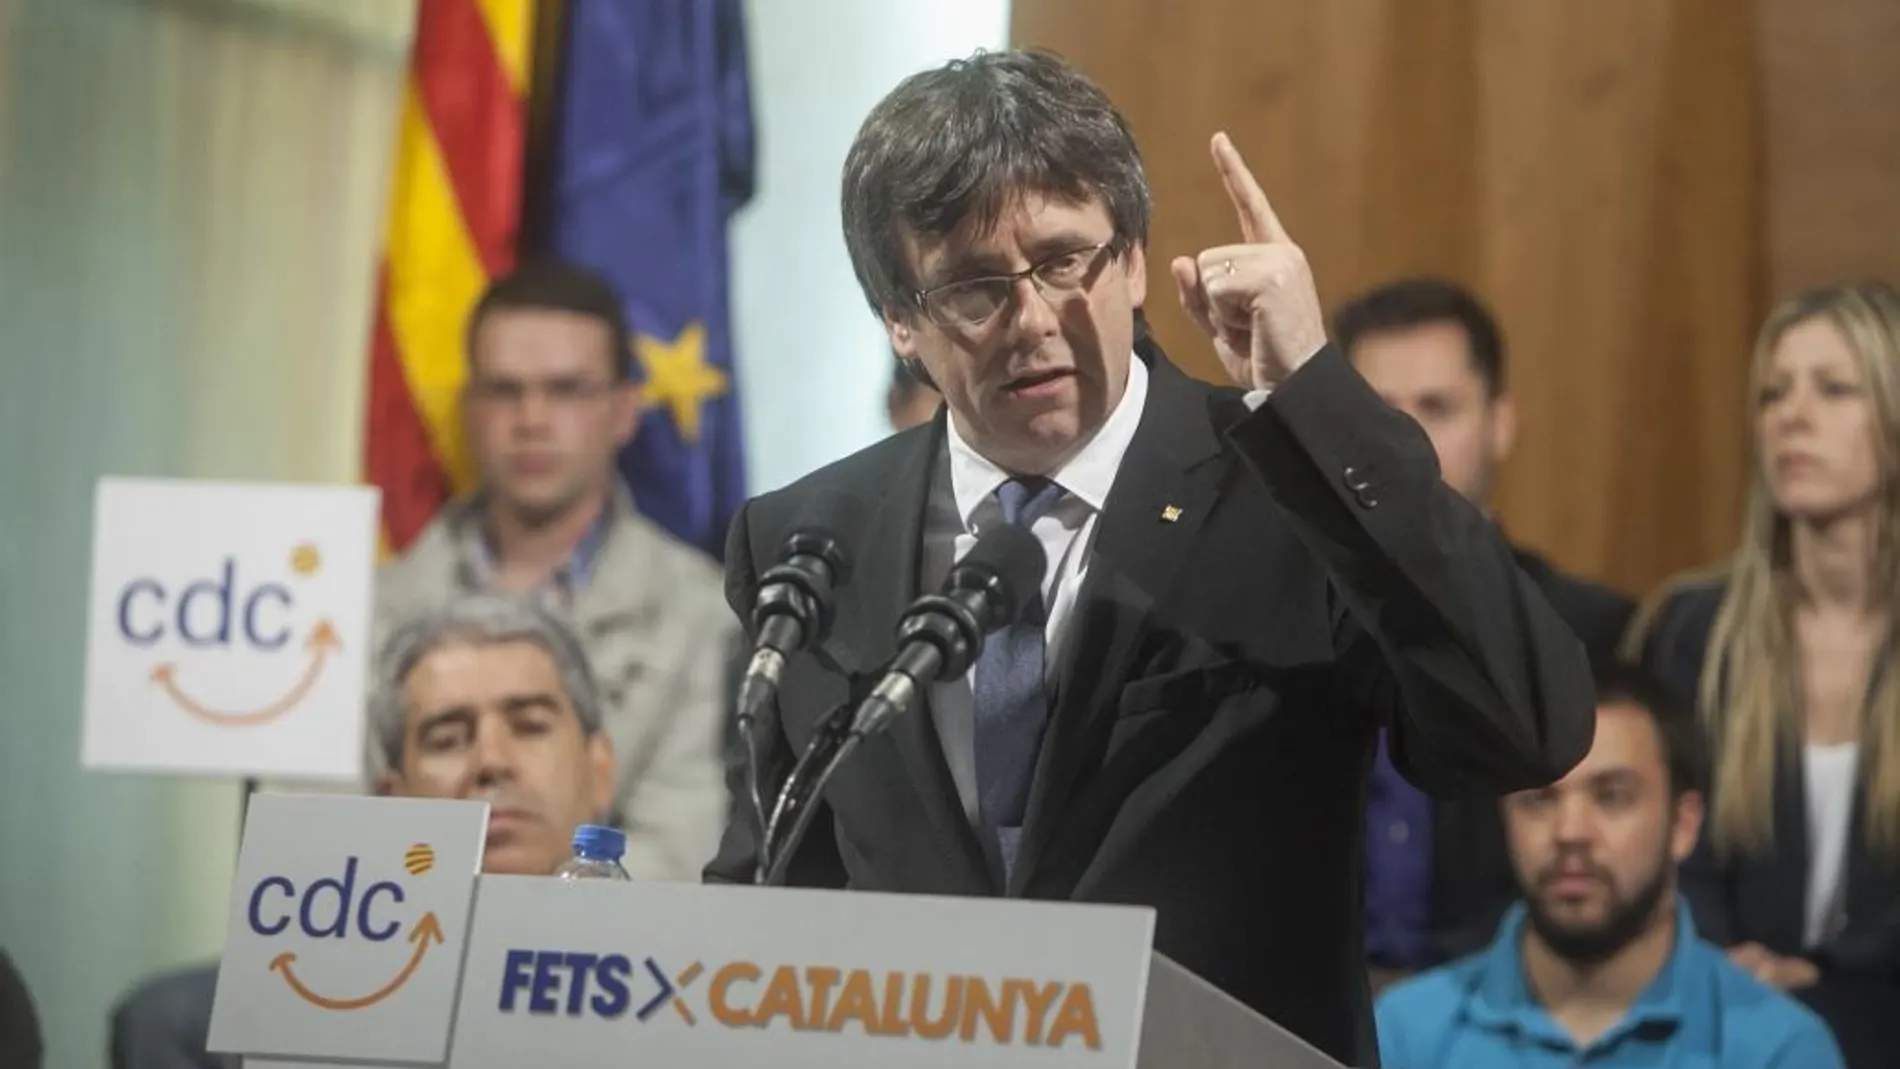 El presidente de la Generalitat, Carles Puigdemont, durante su intervención en un acto electoral que CDC